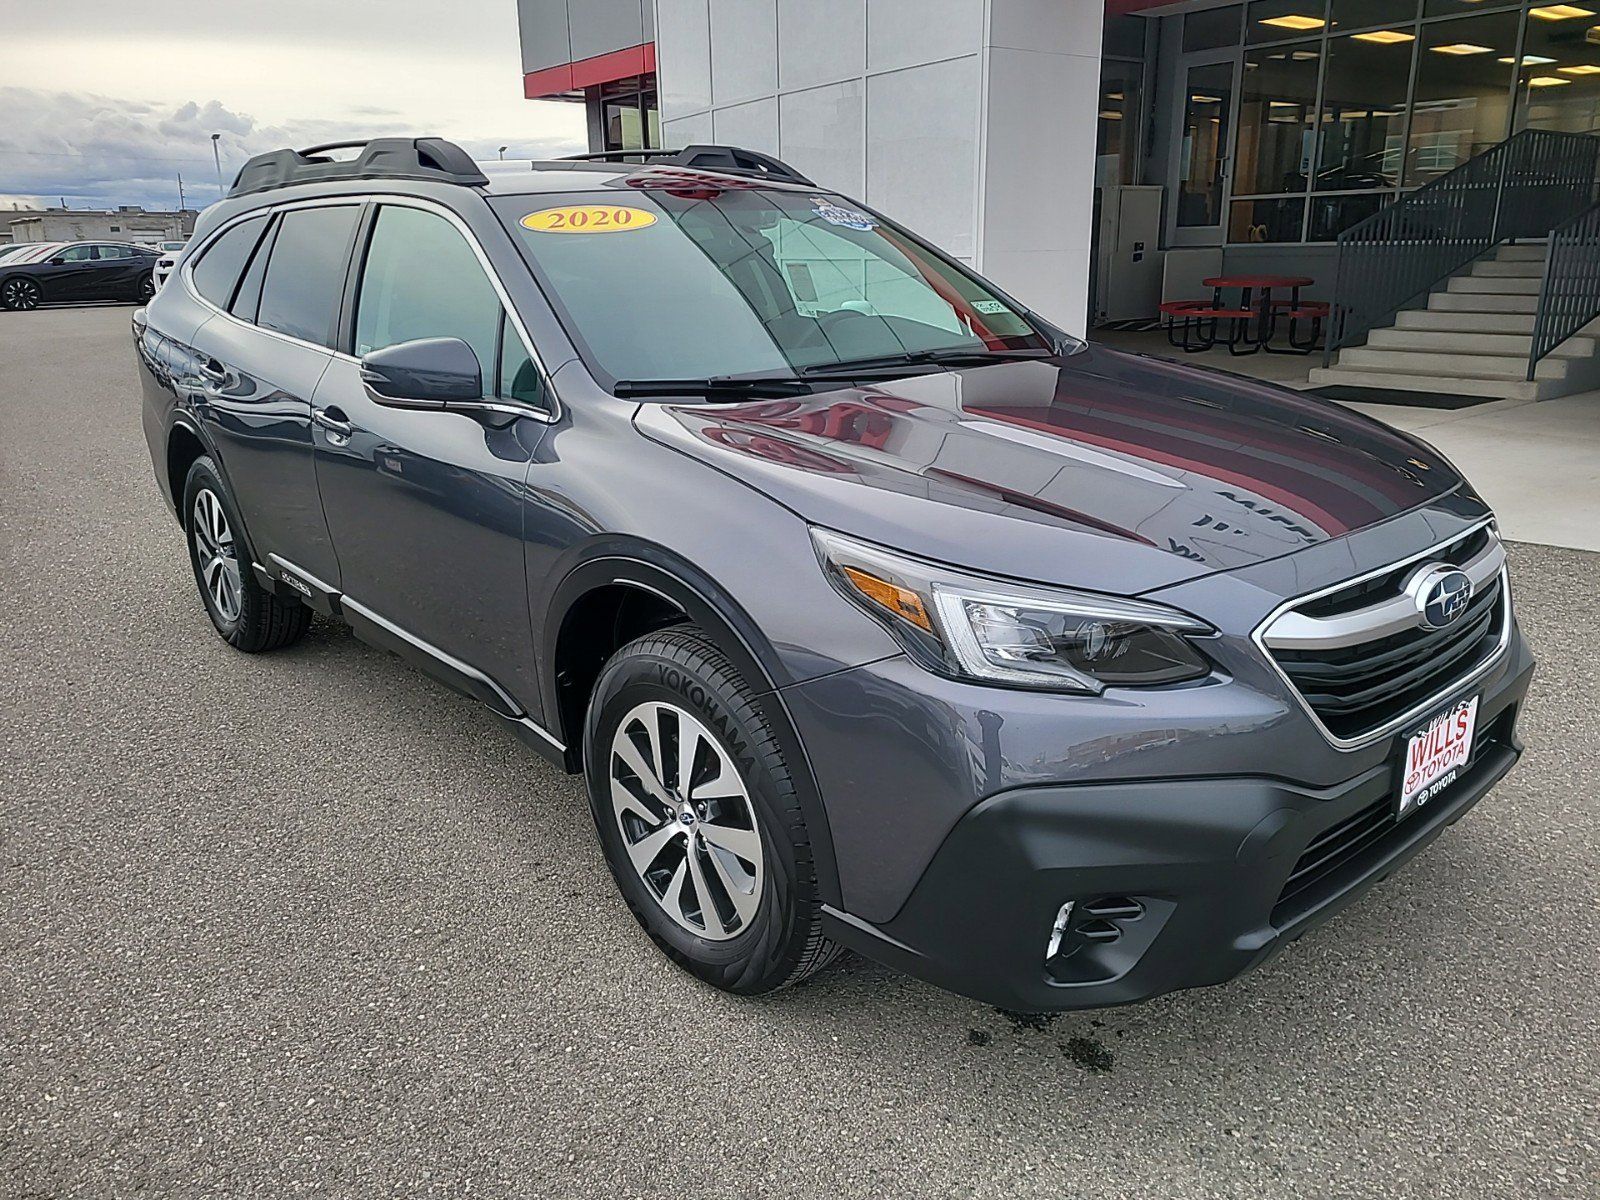 2020 - Subaru - Outback - $28,288